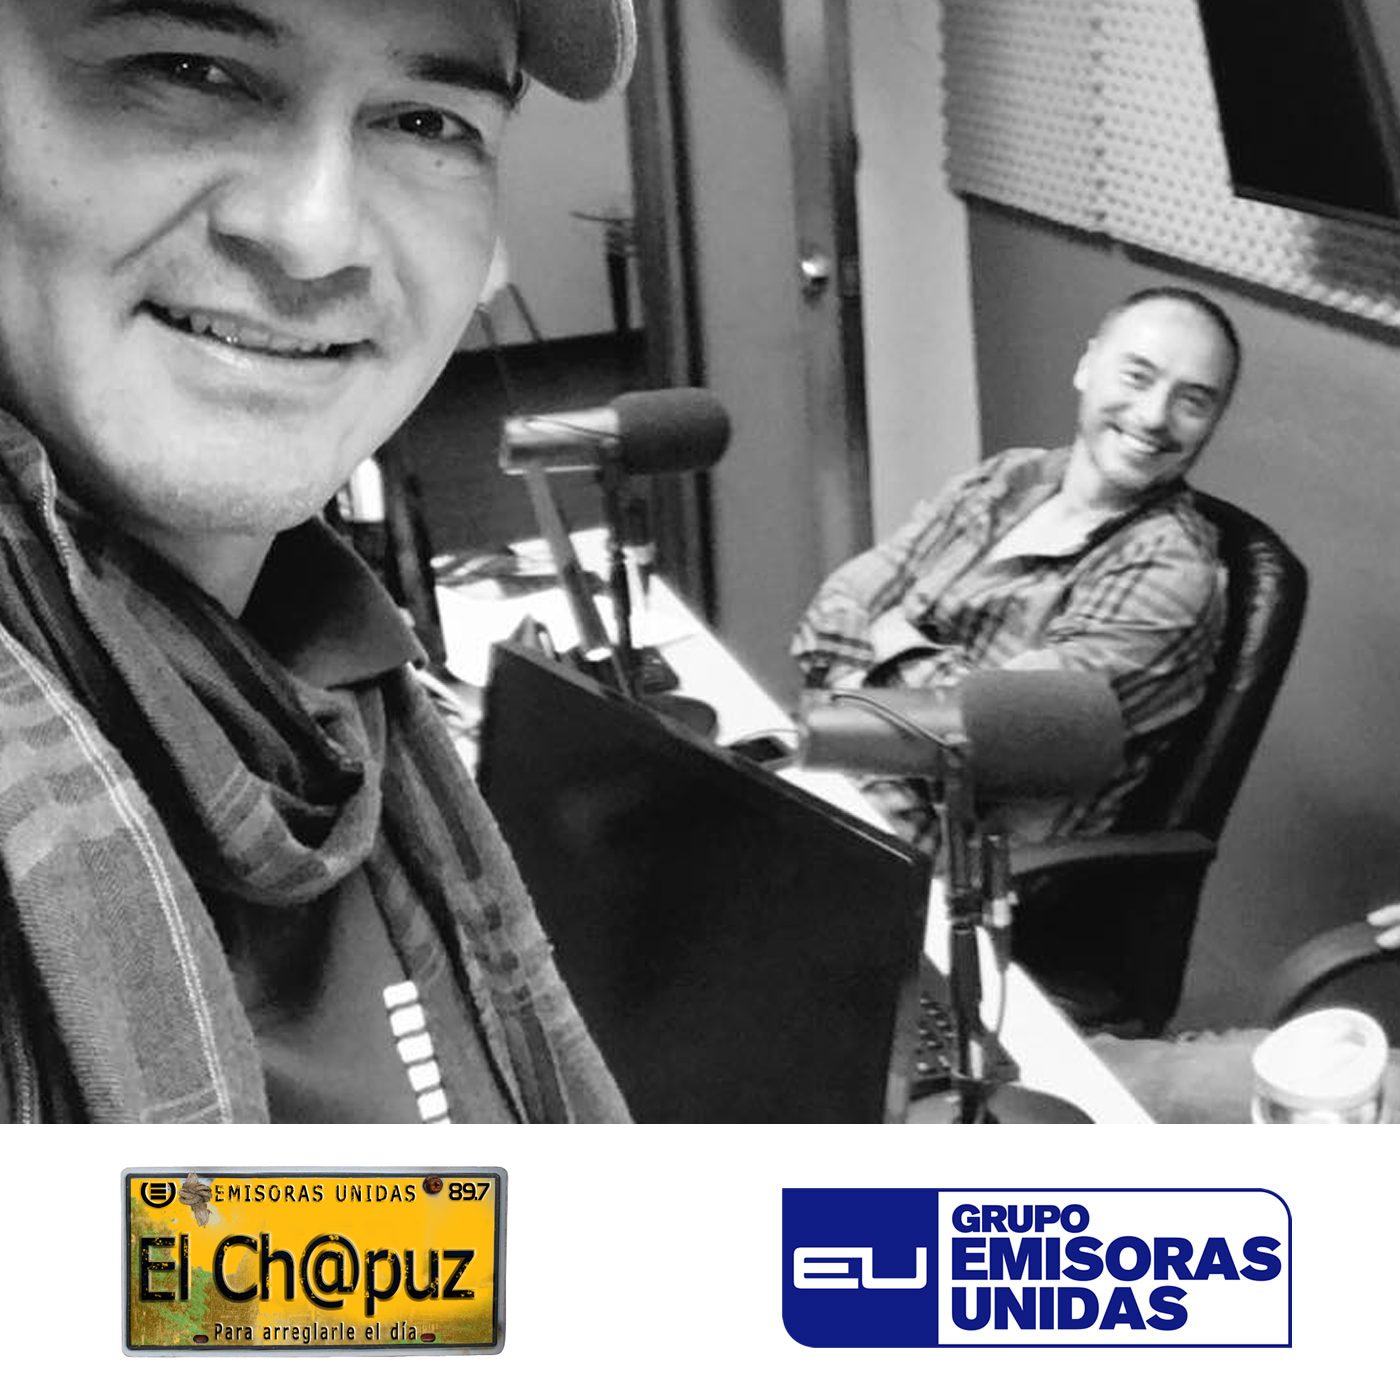 EC05 - El Chapuz - Emisoras unidas - #PreguntasIncomodas